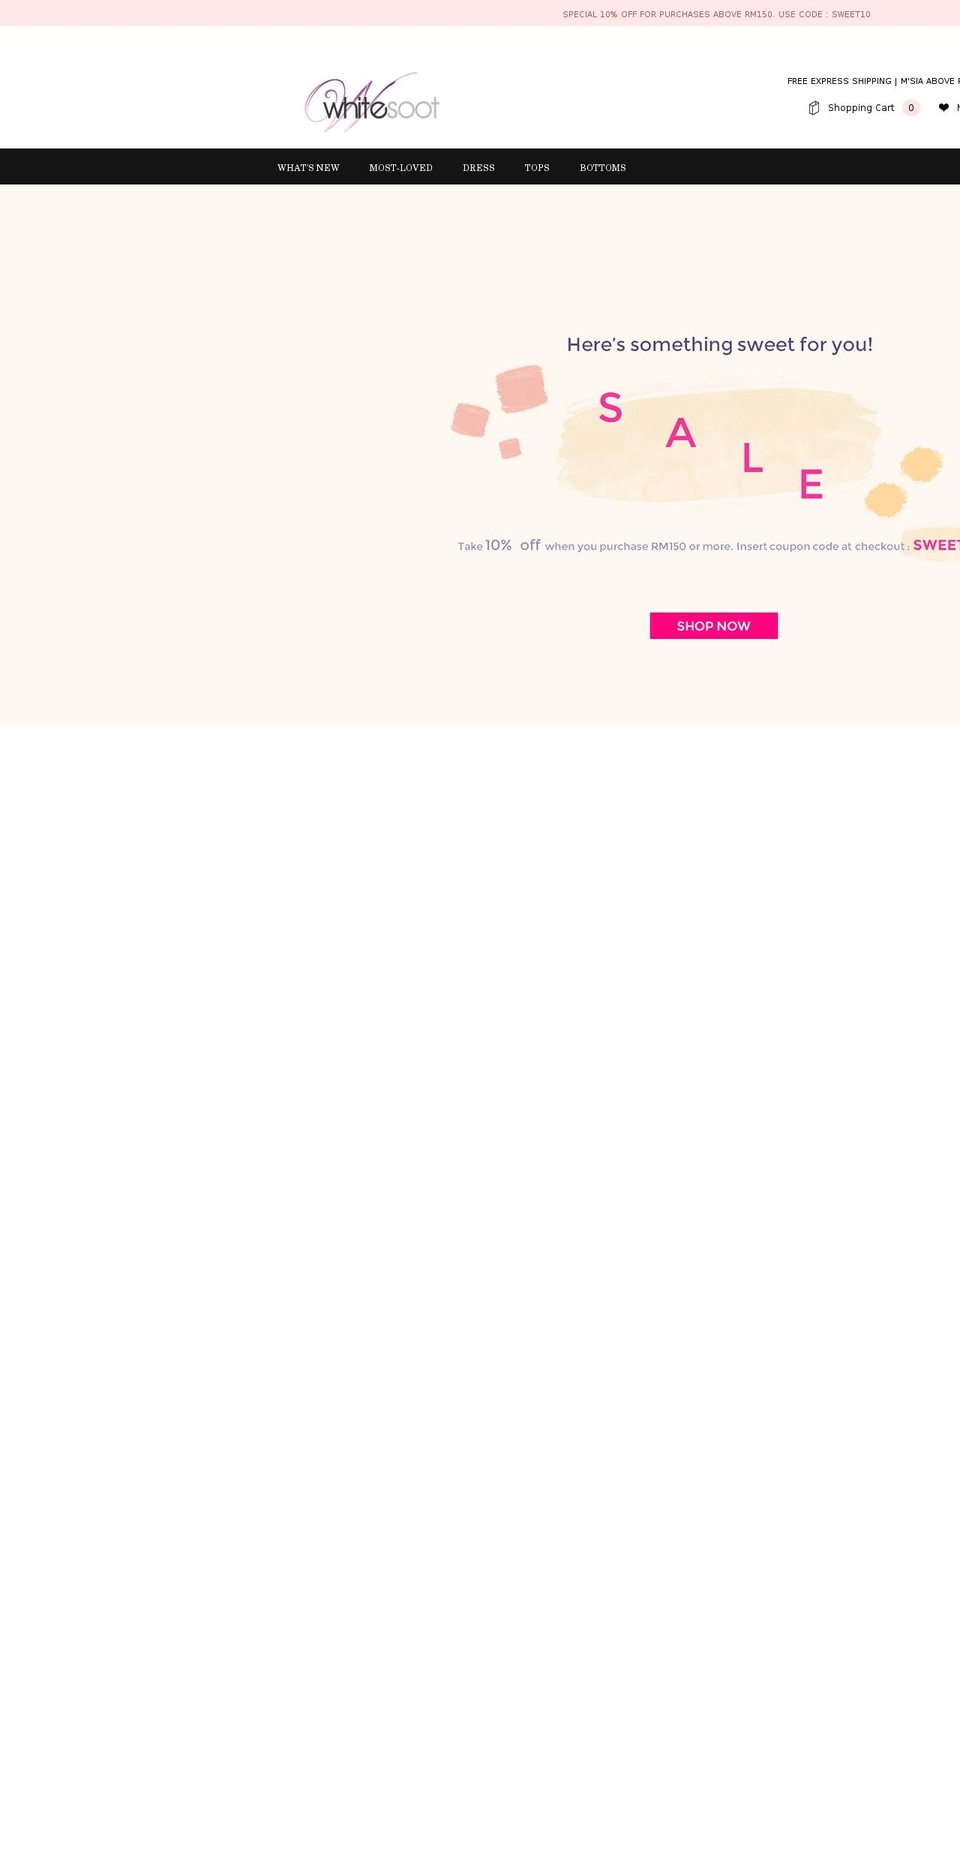 whitesoot.com shopify website screenshot